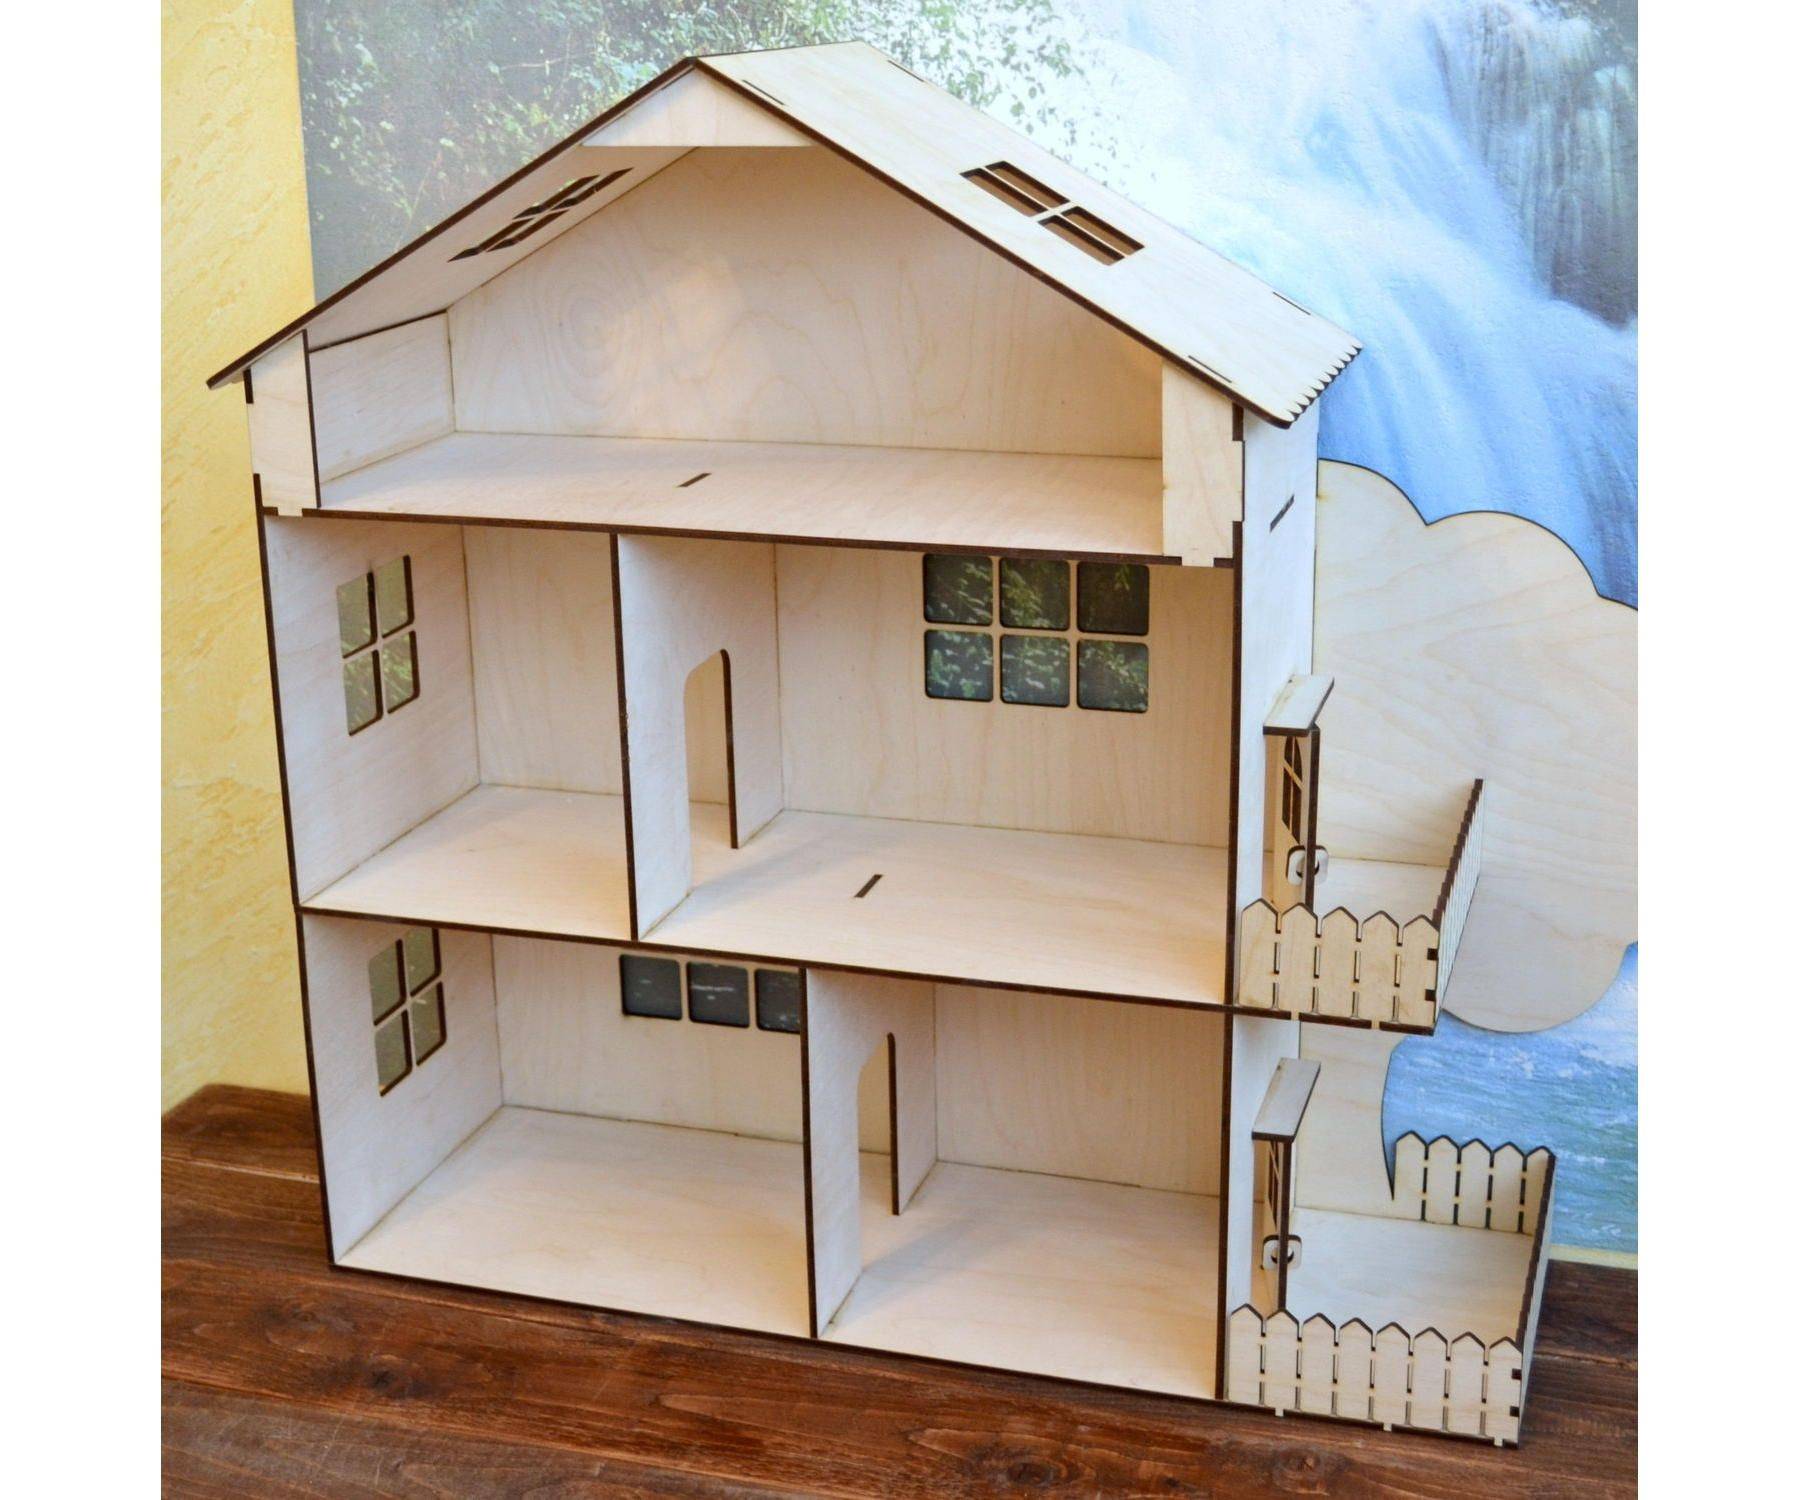 Кукольный домик своими руками — интересные идеи из фанеры, картона, дерева